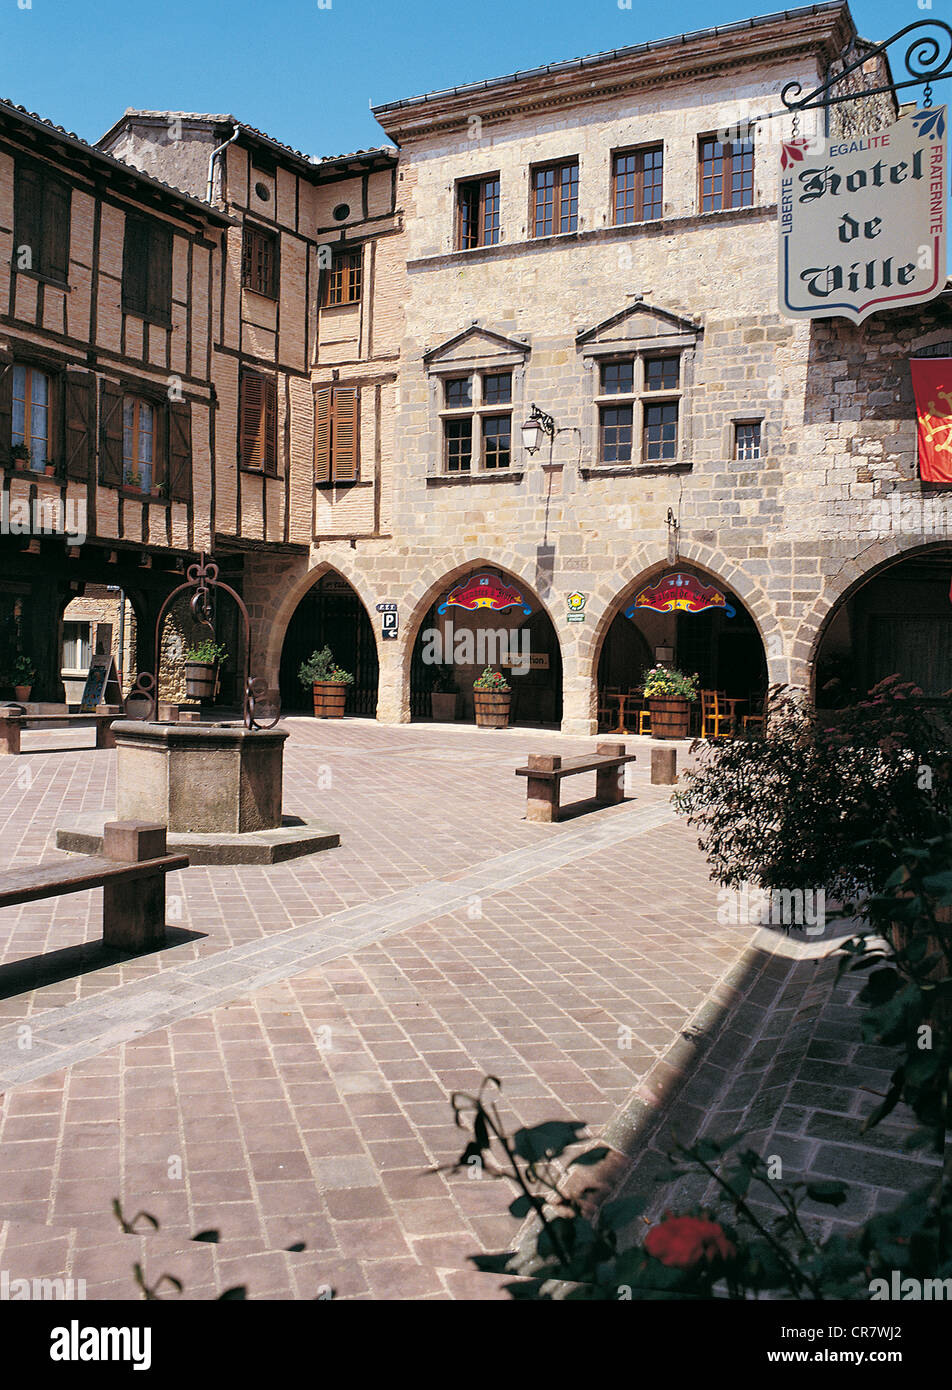 La France, Tarn, Castelnau de Montmiral étiqueté Les Plus Beaux Villages de France (Les Plus Beaux Villages de France) Banque D'Images